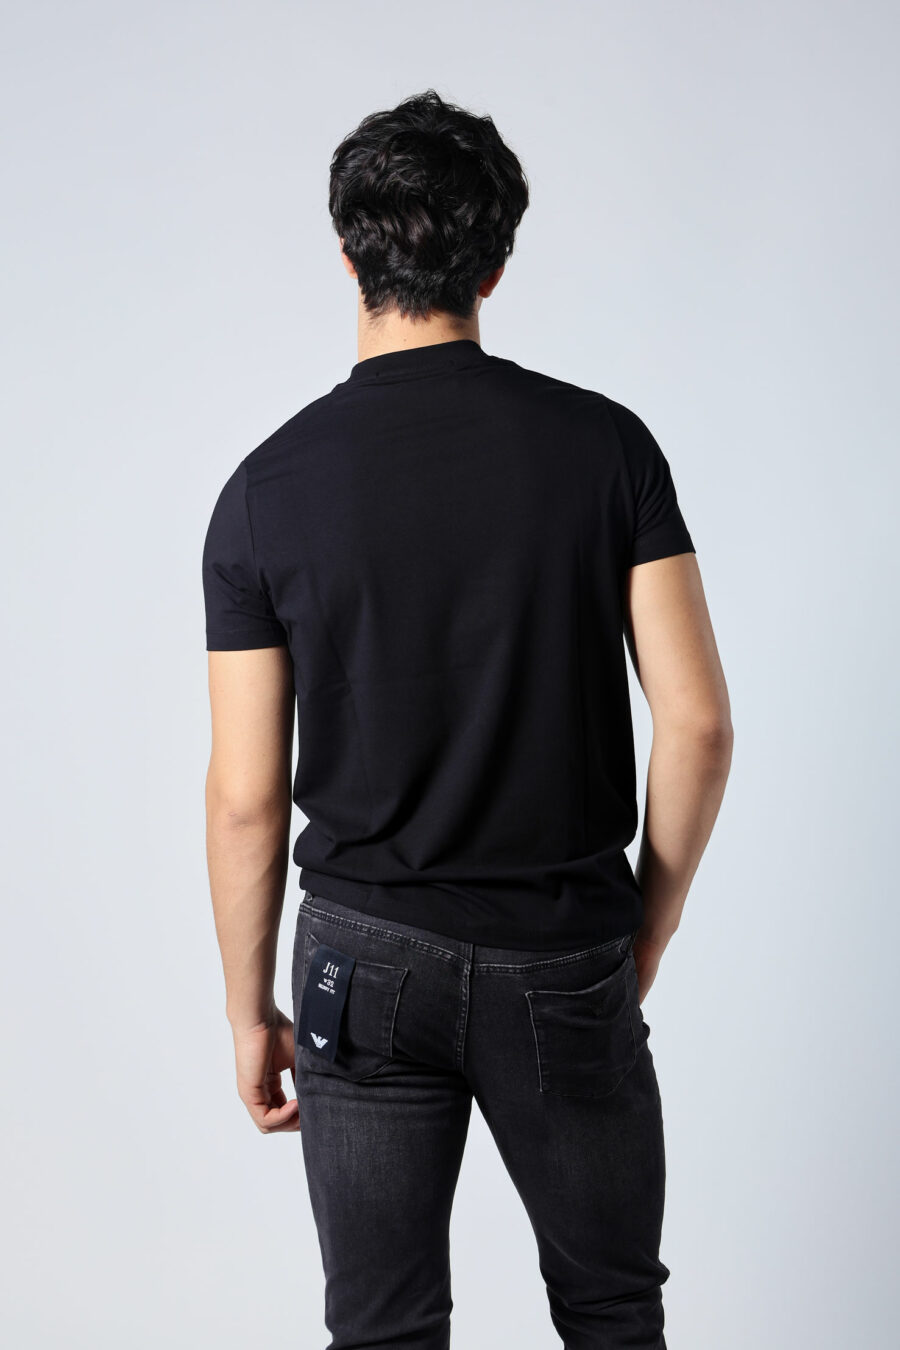 T-shirt preta com maxilogo "karl" dourado - Untitled Catalog 05710